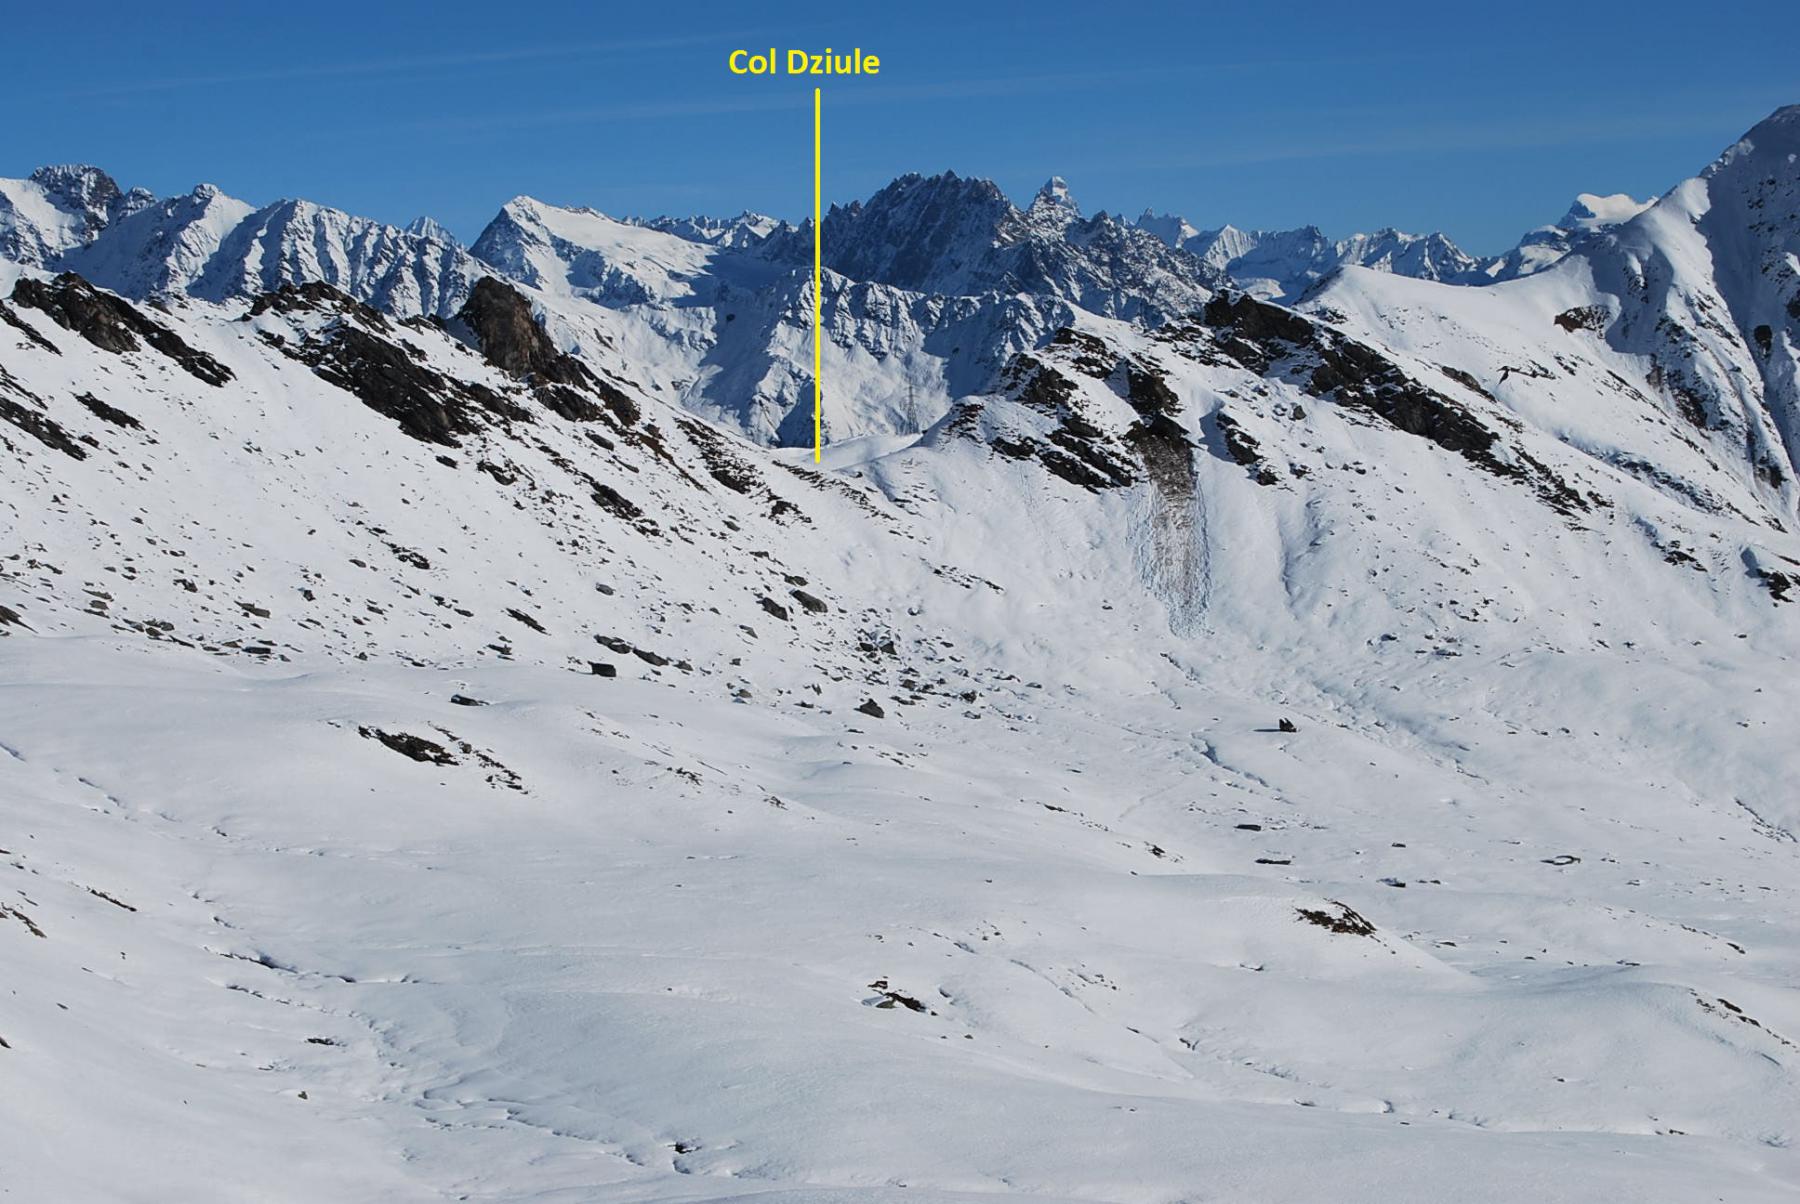 Il Col Dziule (2520 m) visto dal Col Fetita: questa meta, più lontana di quanto sembri dall’immagine, è stata accantonata. Sullo sfondo il Cervino.